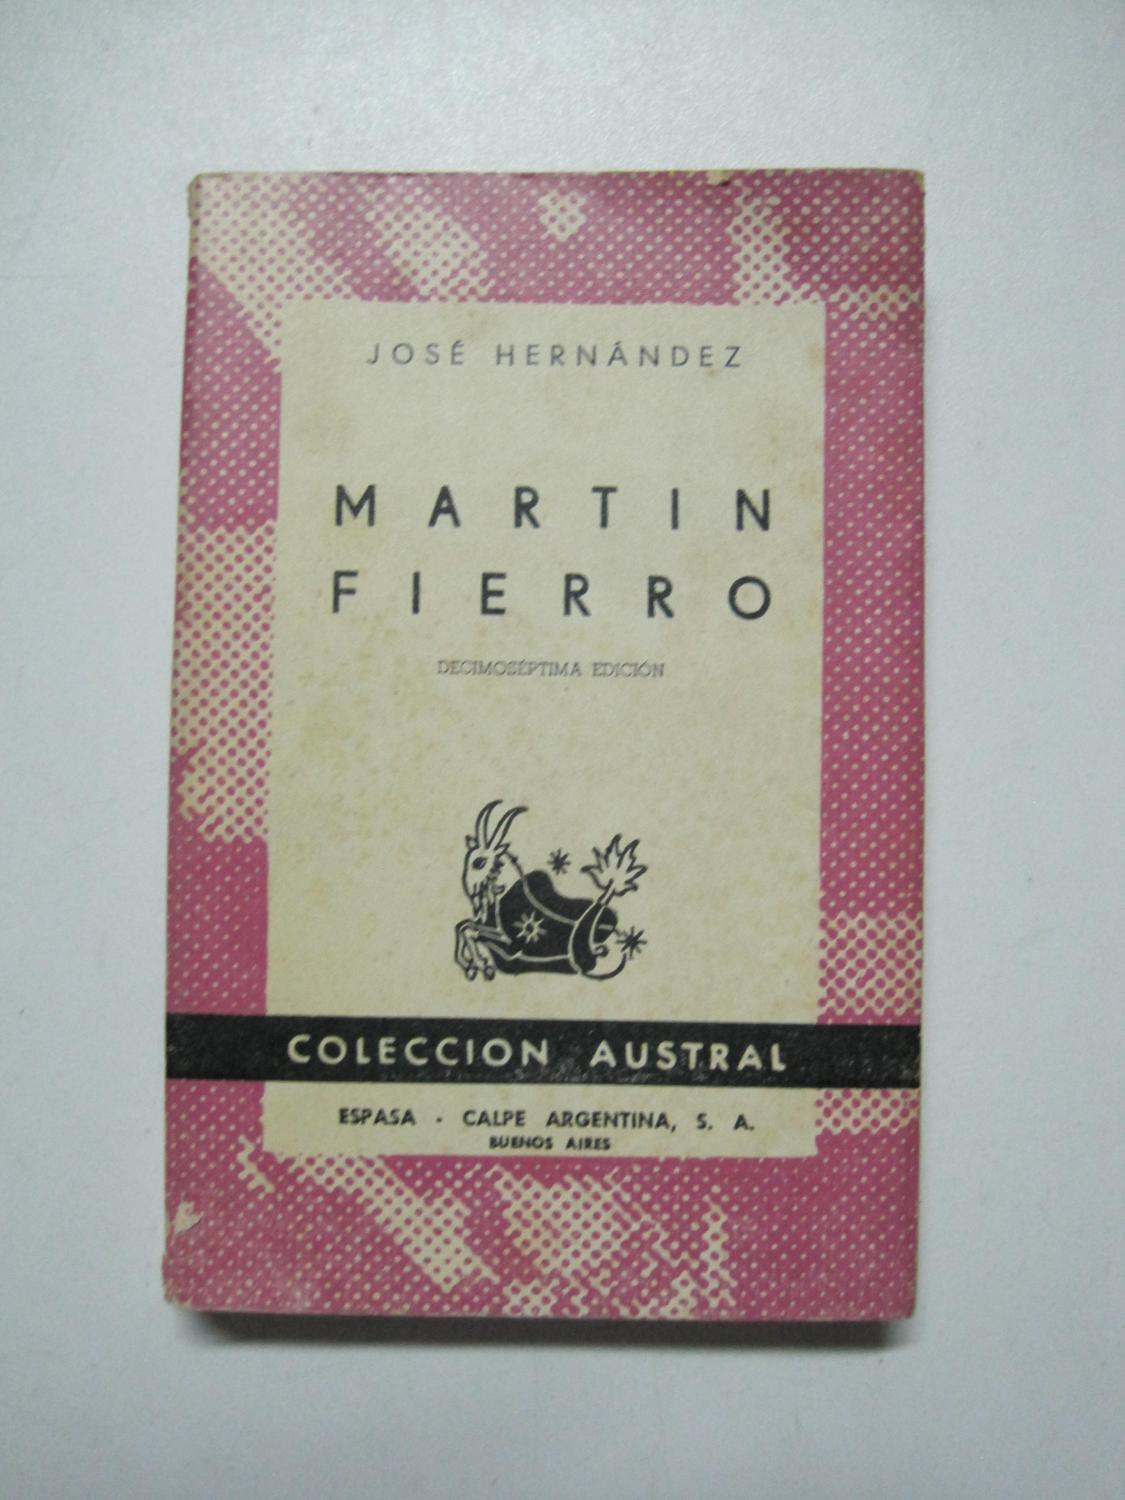 Martin Fierro by Jose Hernandez: Aceptable Encuadernación de tapa ...